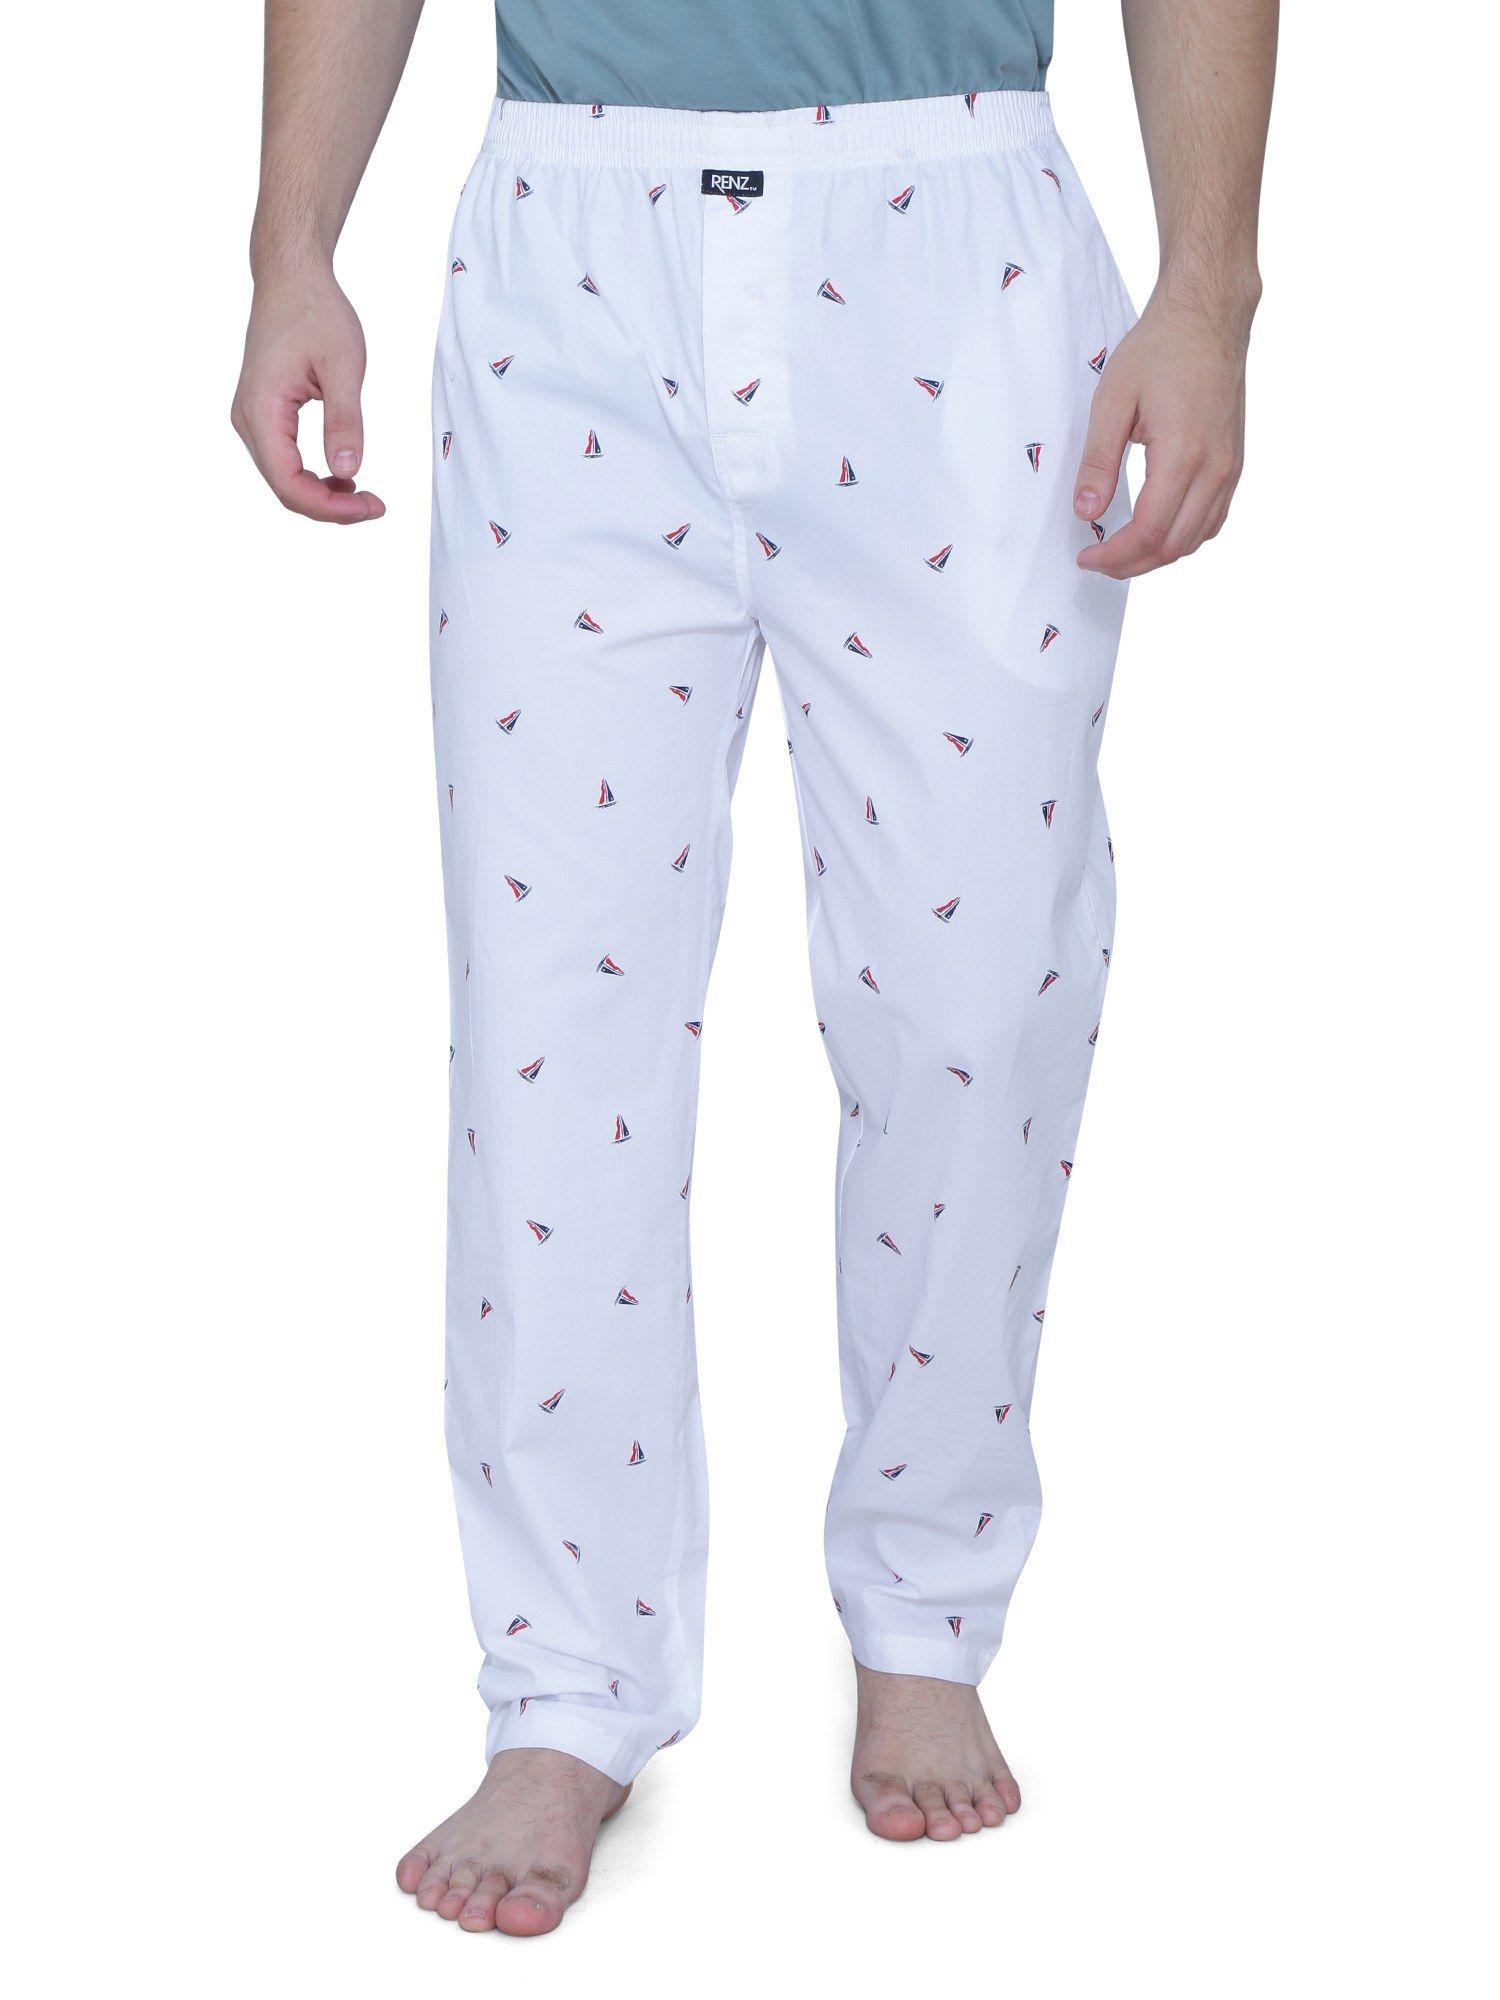 combed cotton finish poplin print pyjama